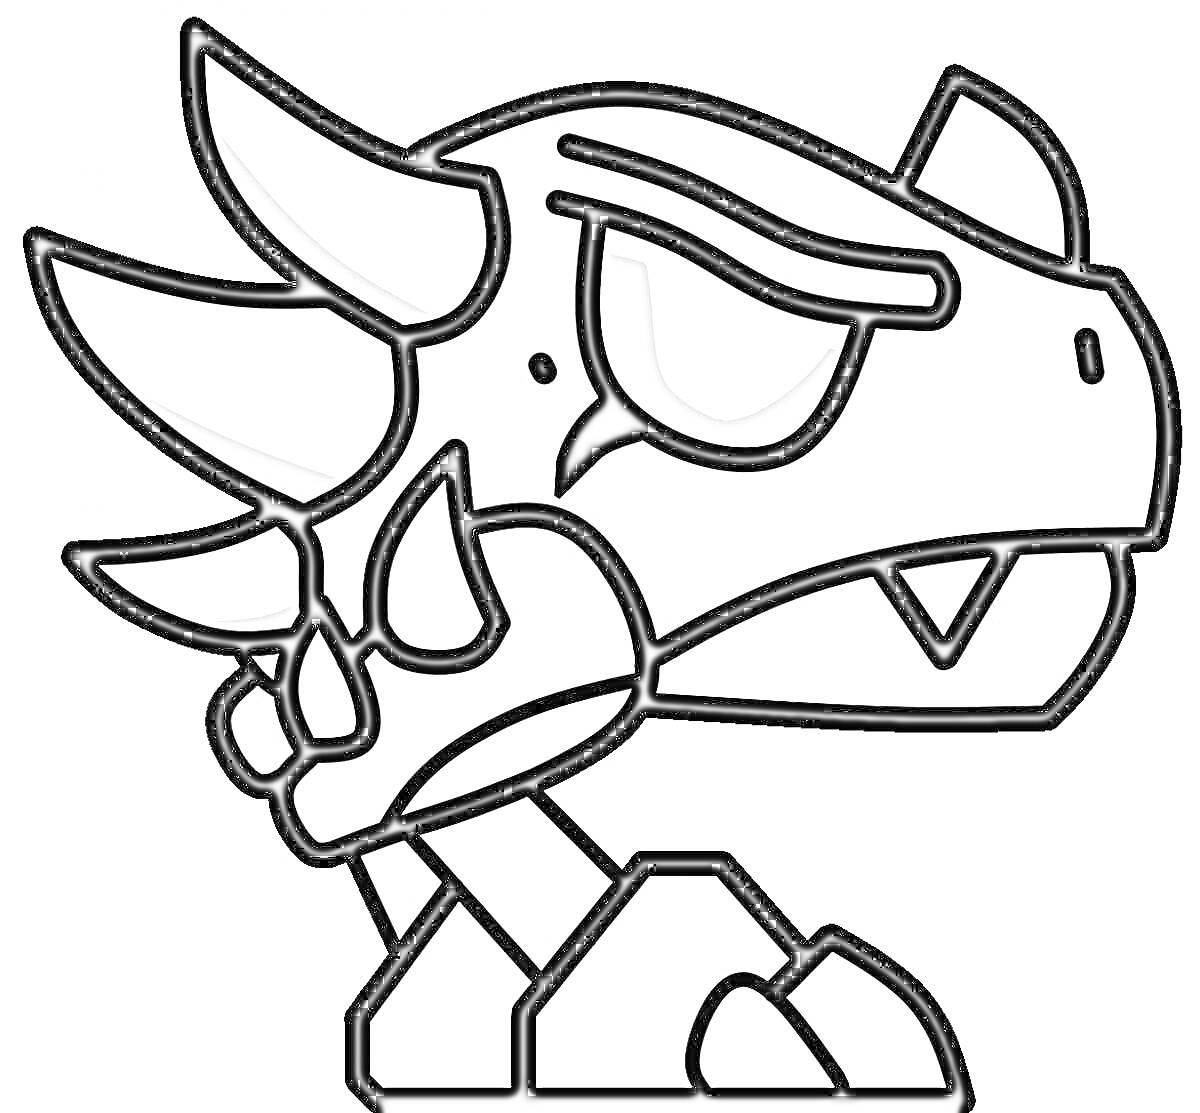 Голова дракона с рогами, клыками и шипами на шлеме в стилистике Geometry Dash